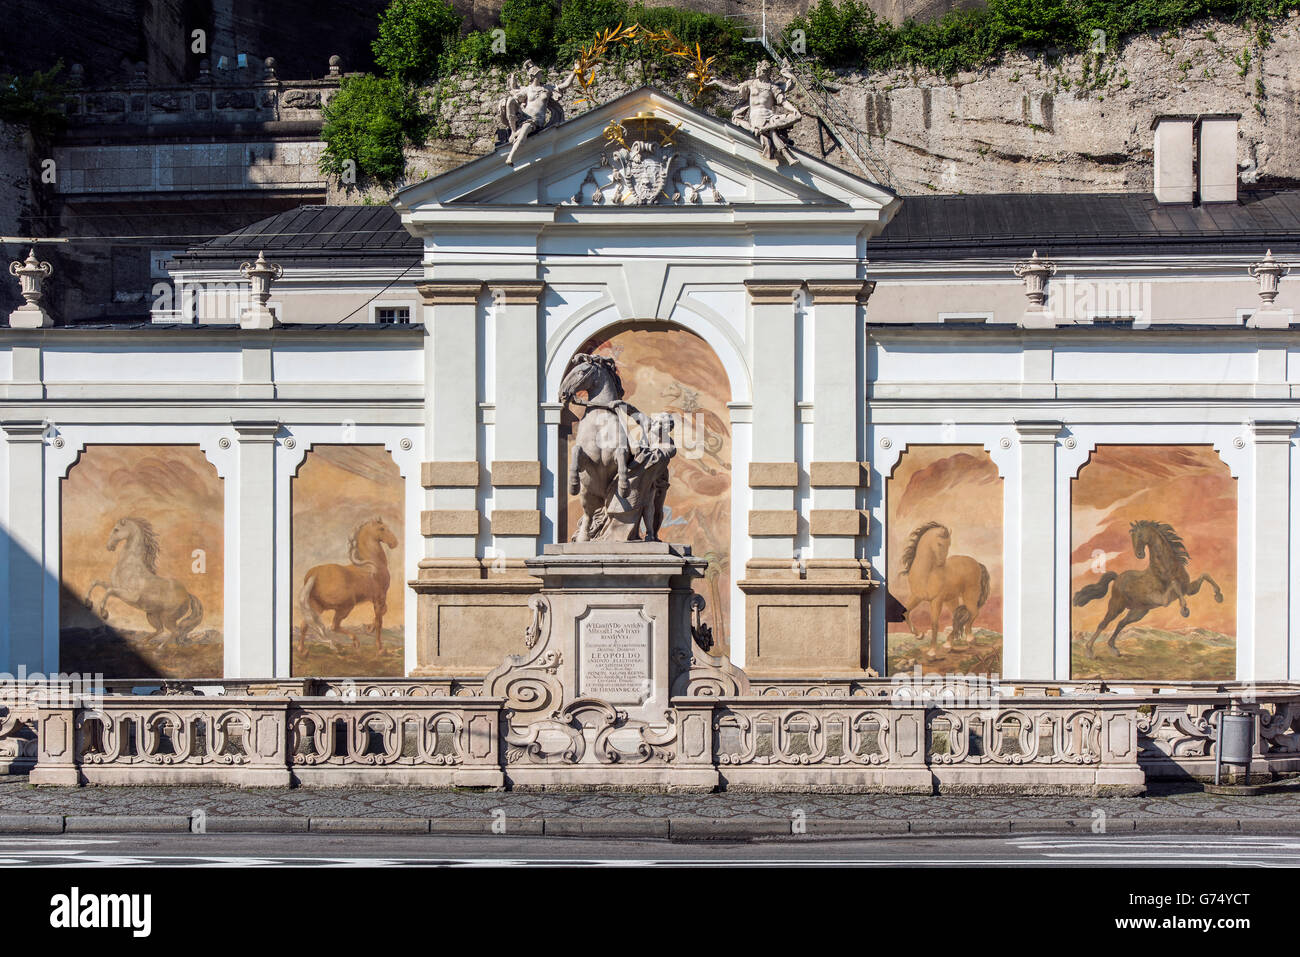 Pferdeschwemme horse pond, Herbert-von-Karajan-Platz, Salzburg, Austria Stock Photo